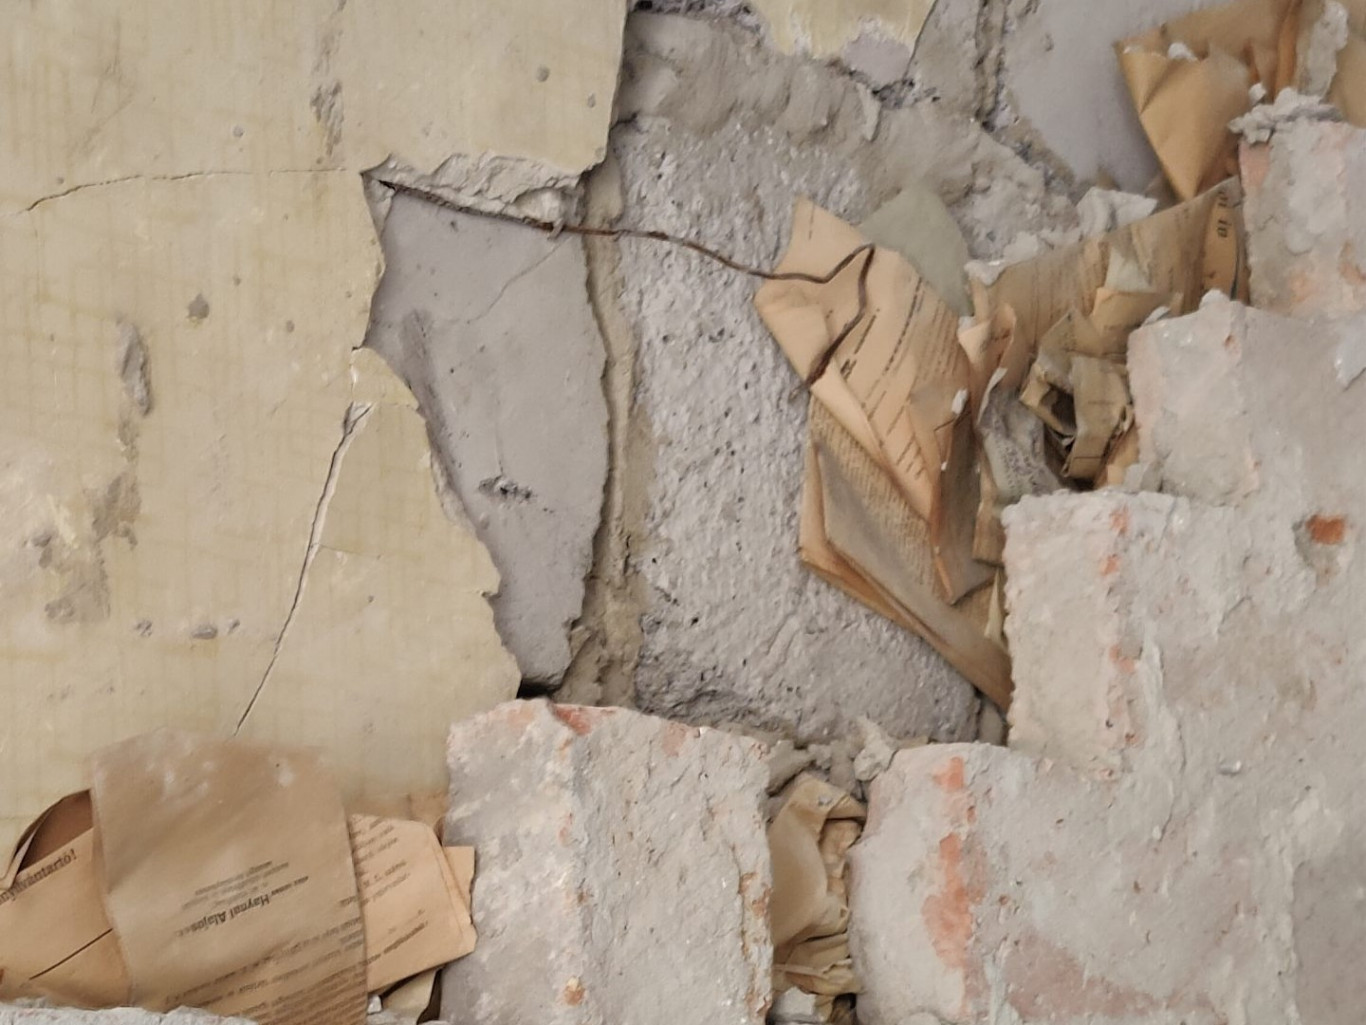 Egy fal mögül kerültek elő a lakásfelújításnál az 1944-es iratok, amik megmutatják, milyen öldöklő küzdelem ment a...